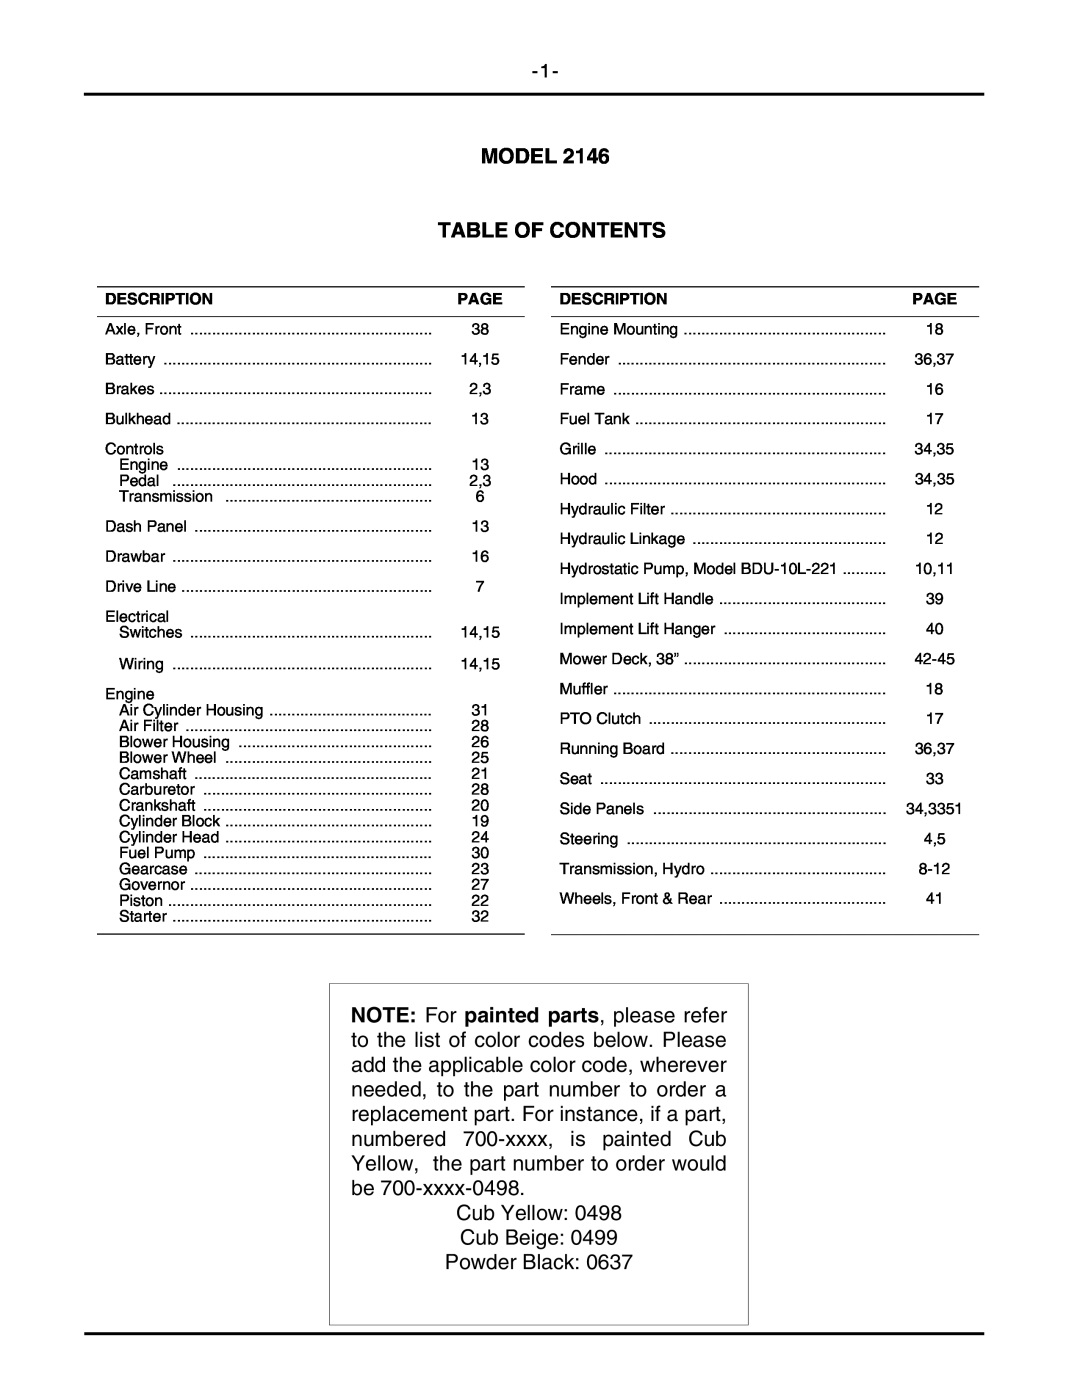 Cub Cadet 2146 manual Model Table Of Contents 